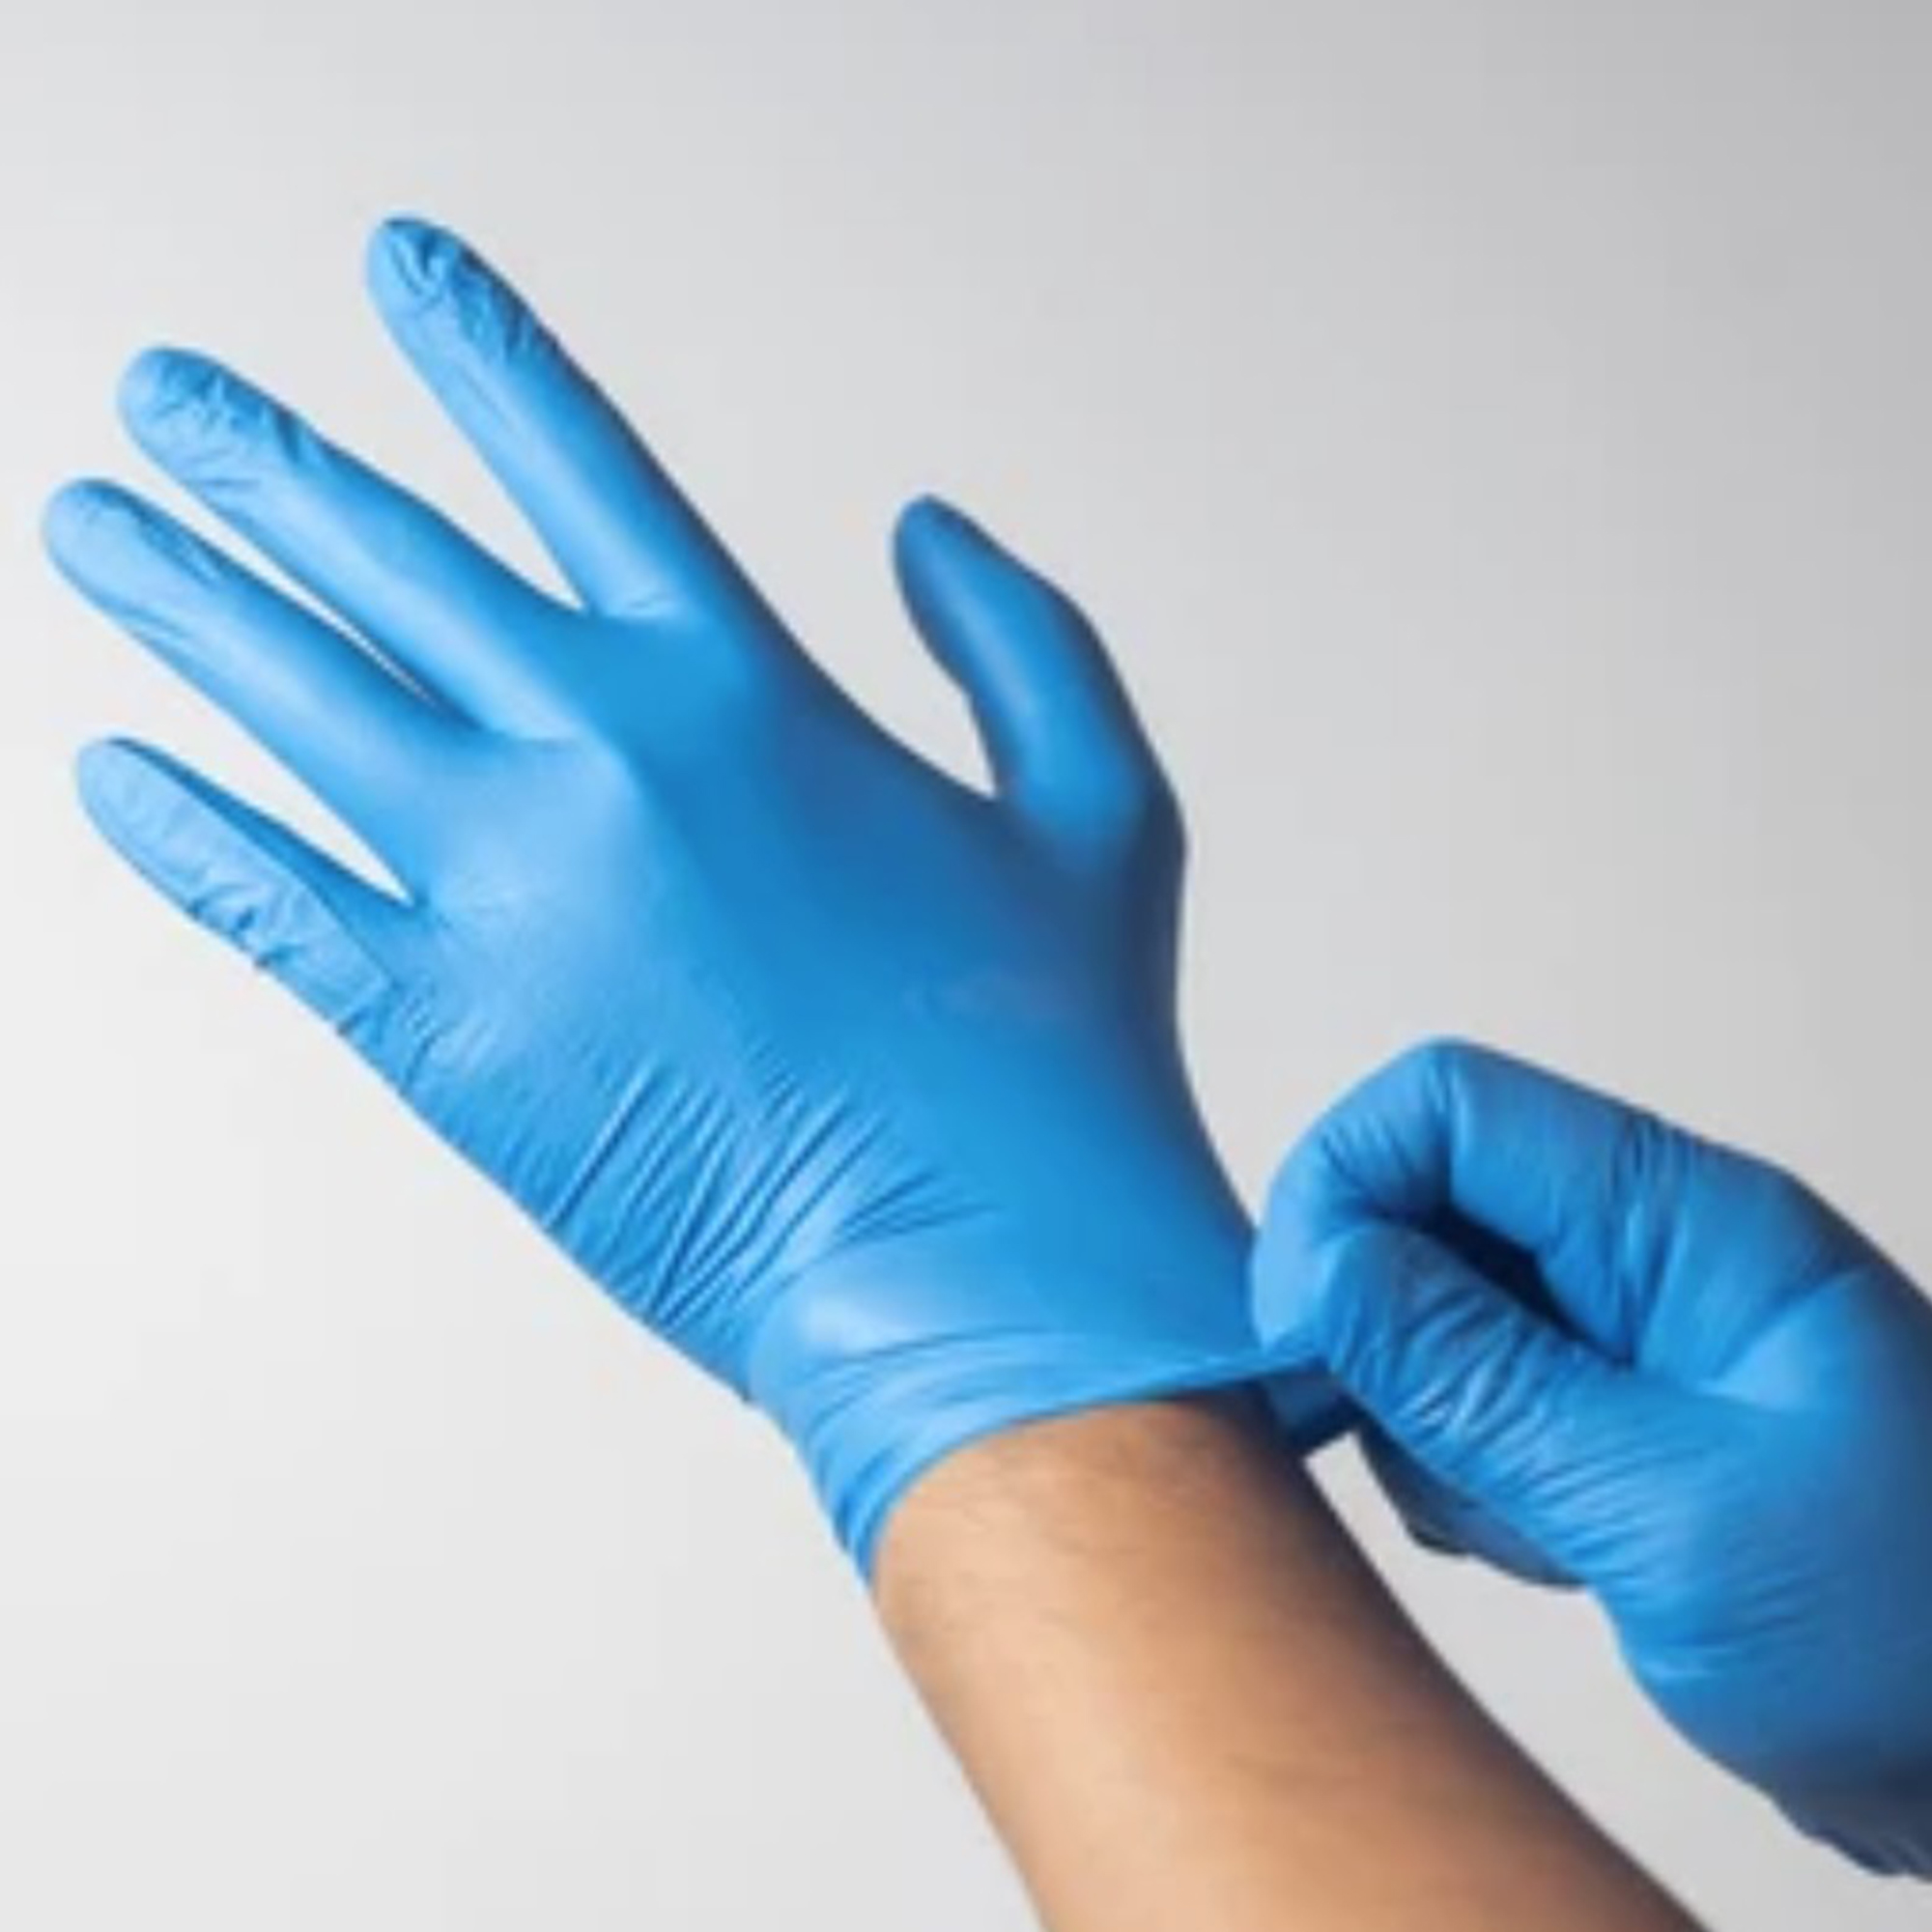 Veterinary/VETERINARY EXAMINATION GLOVES/Latex and Nitrile Veterinary Examination Gloves